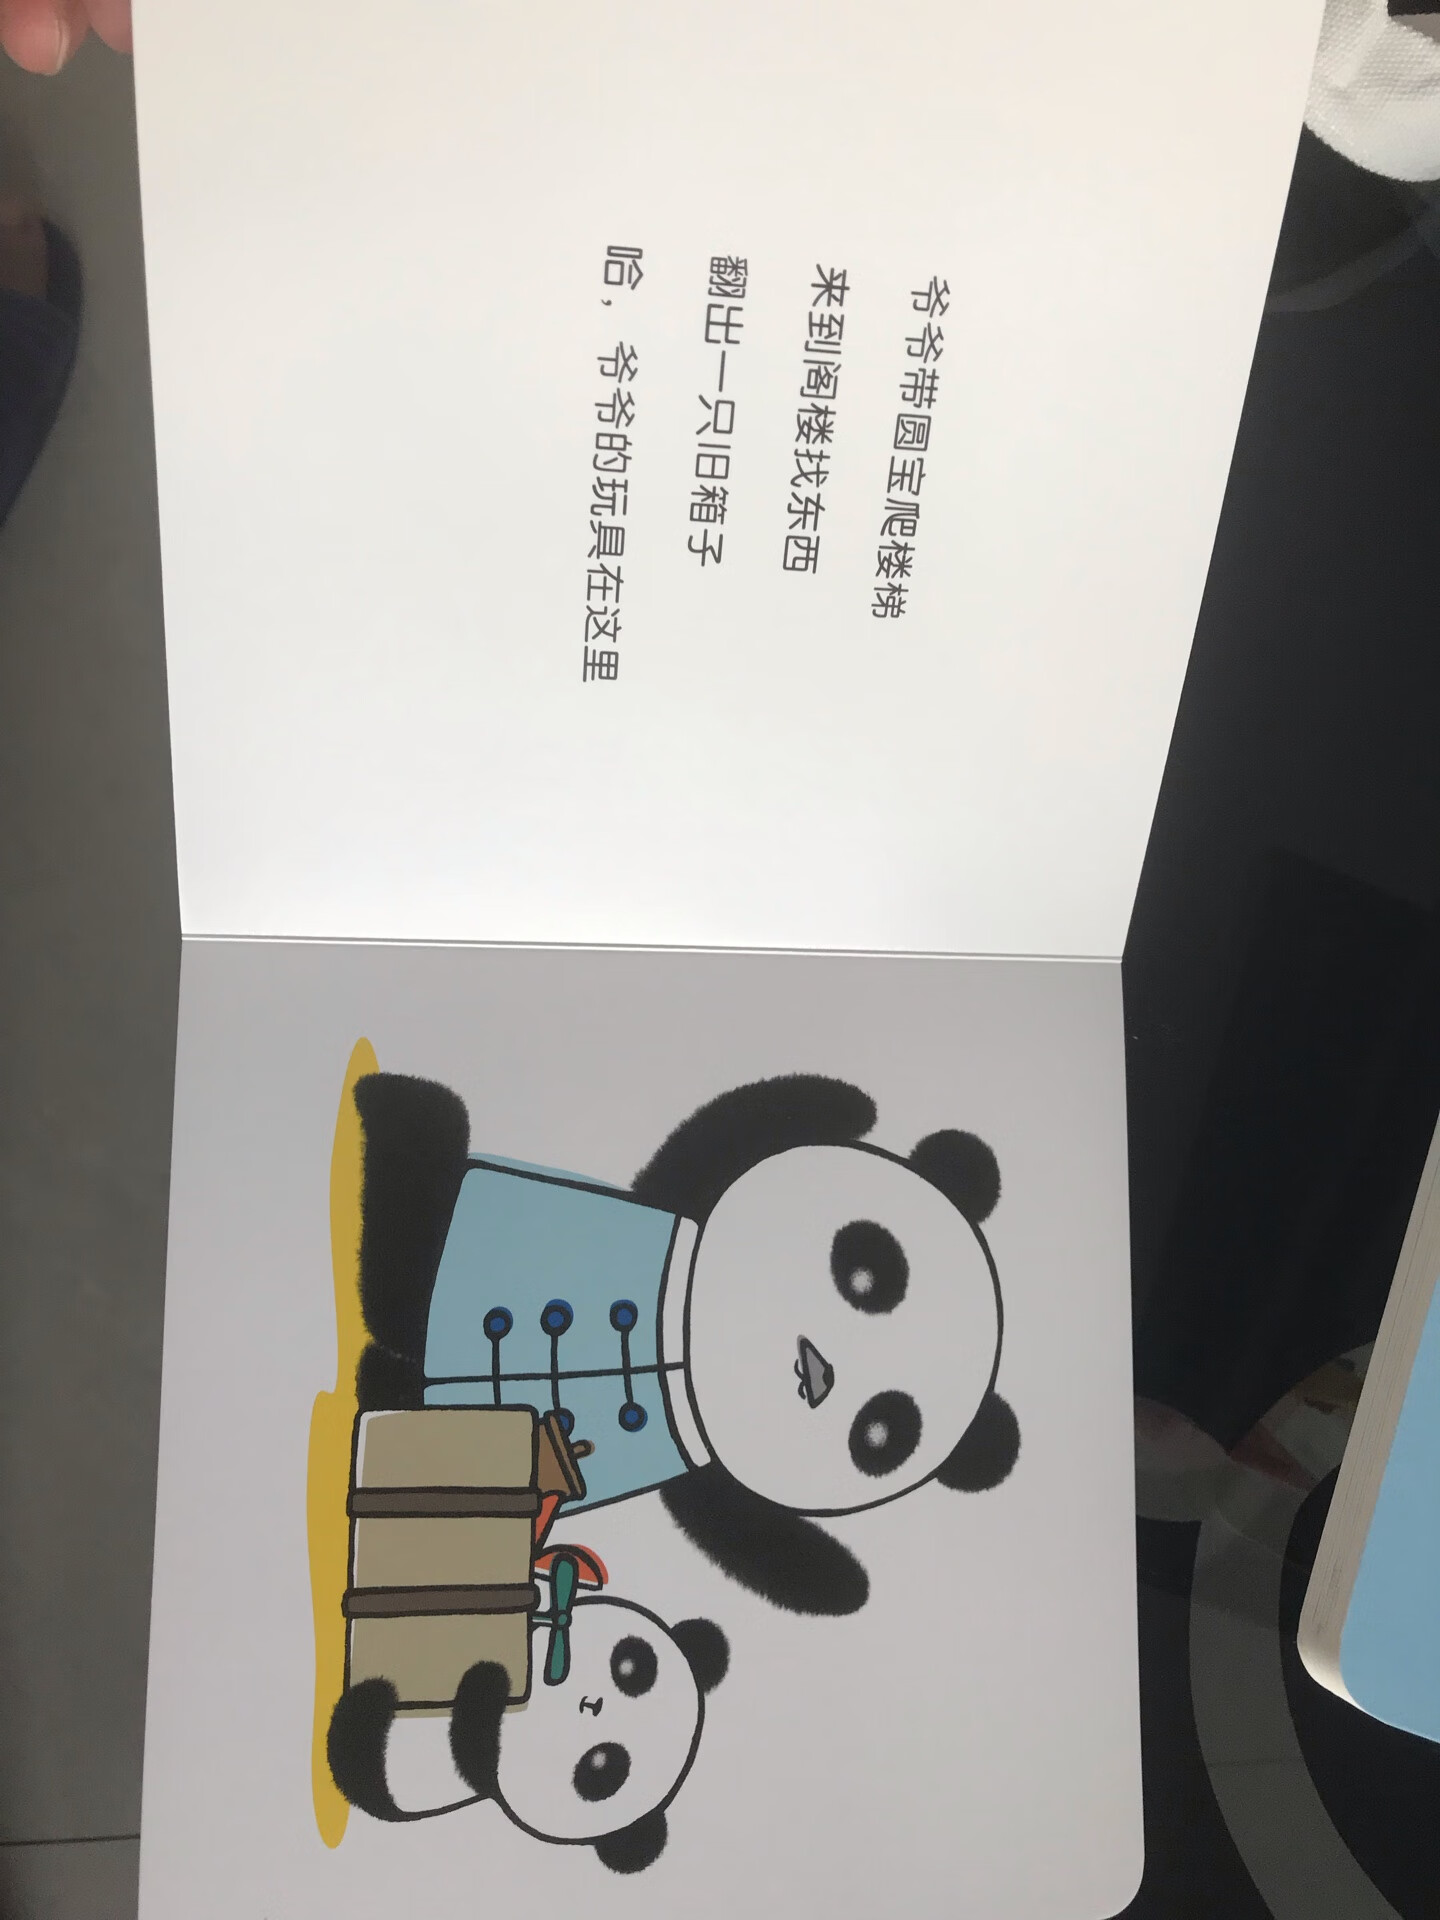 拿到书后惊呆了，没想到我们国家都可以出这样高质量的幼儿图书了。感觉和国外的绘本差不多，颜色漂亮，内容丰富，而且是以熊猫为主角的，满满的中国风。小盆友很喜欢，适合两岁左右的小盆友。